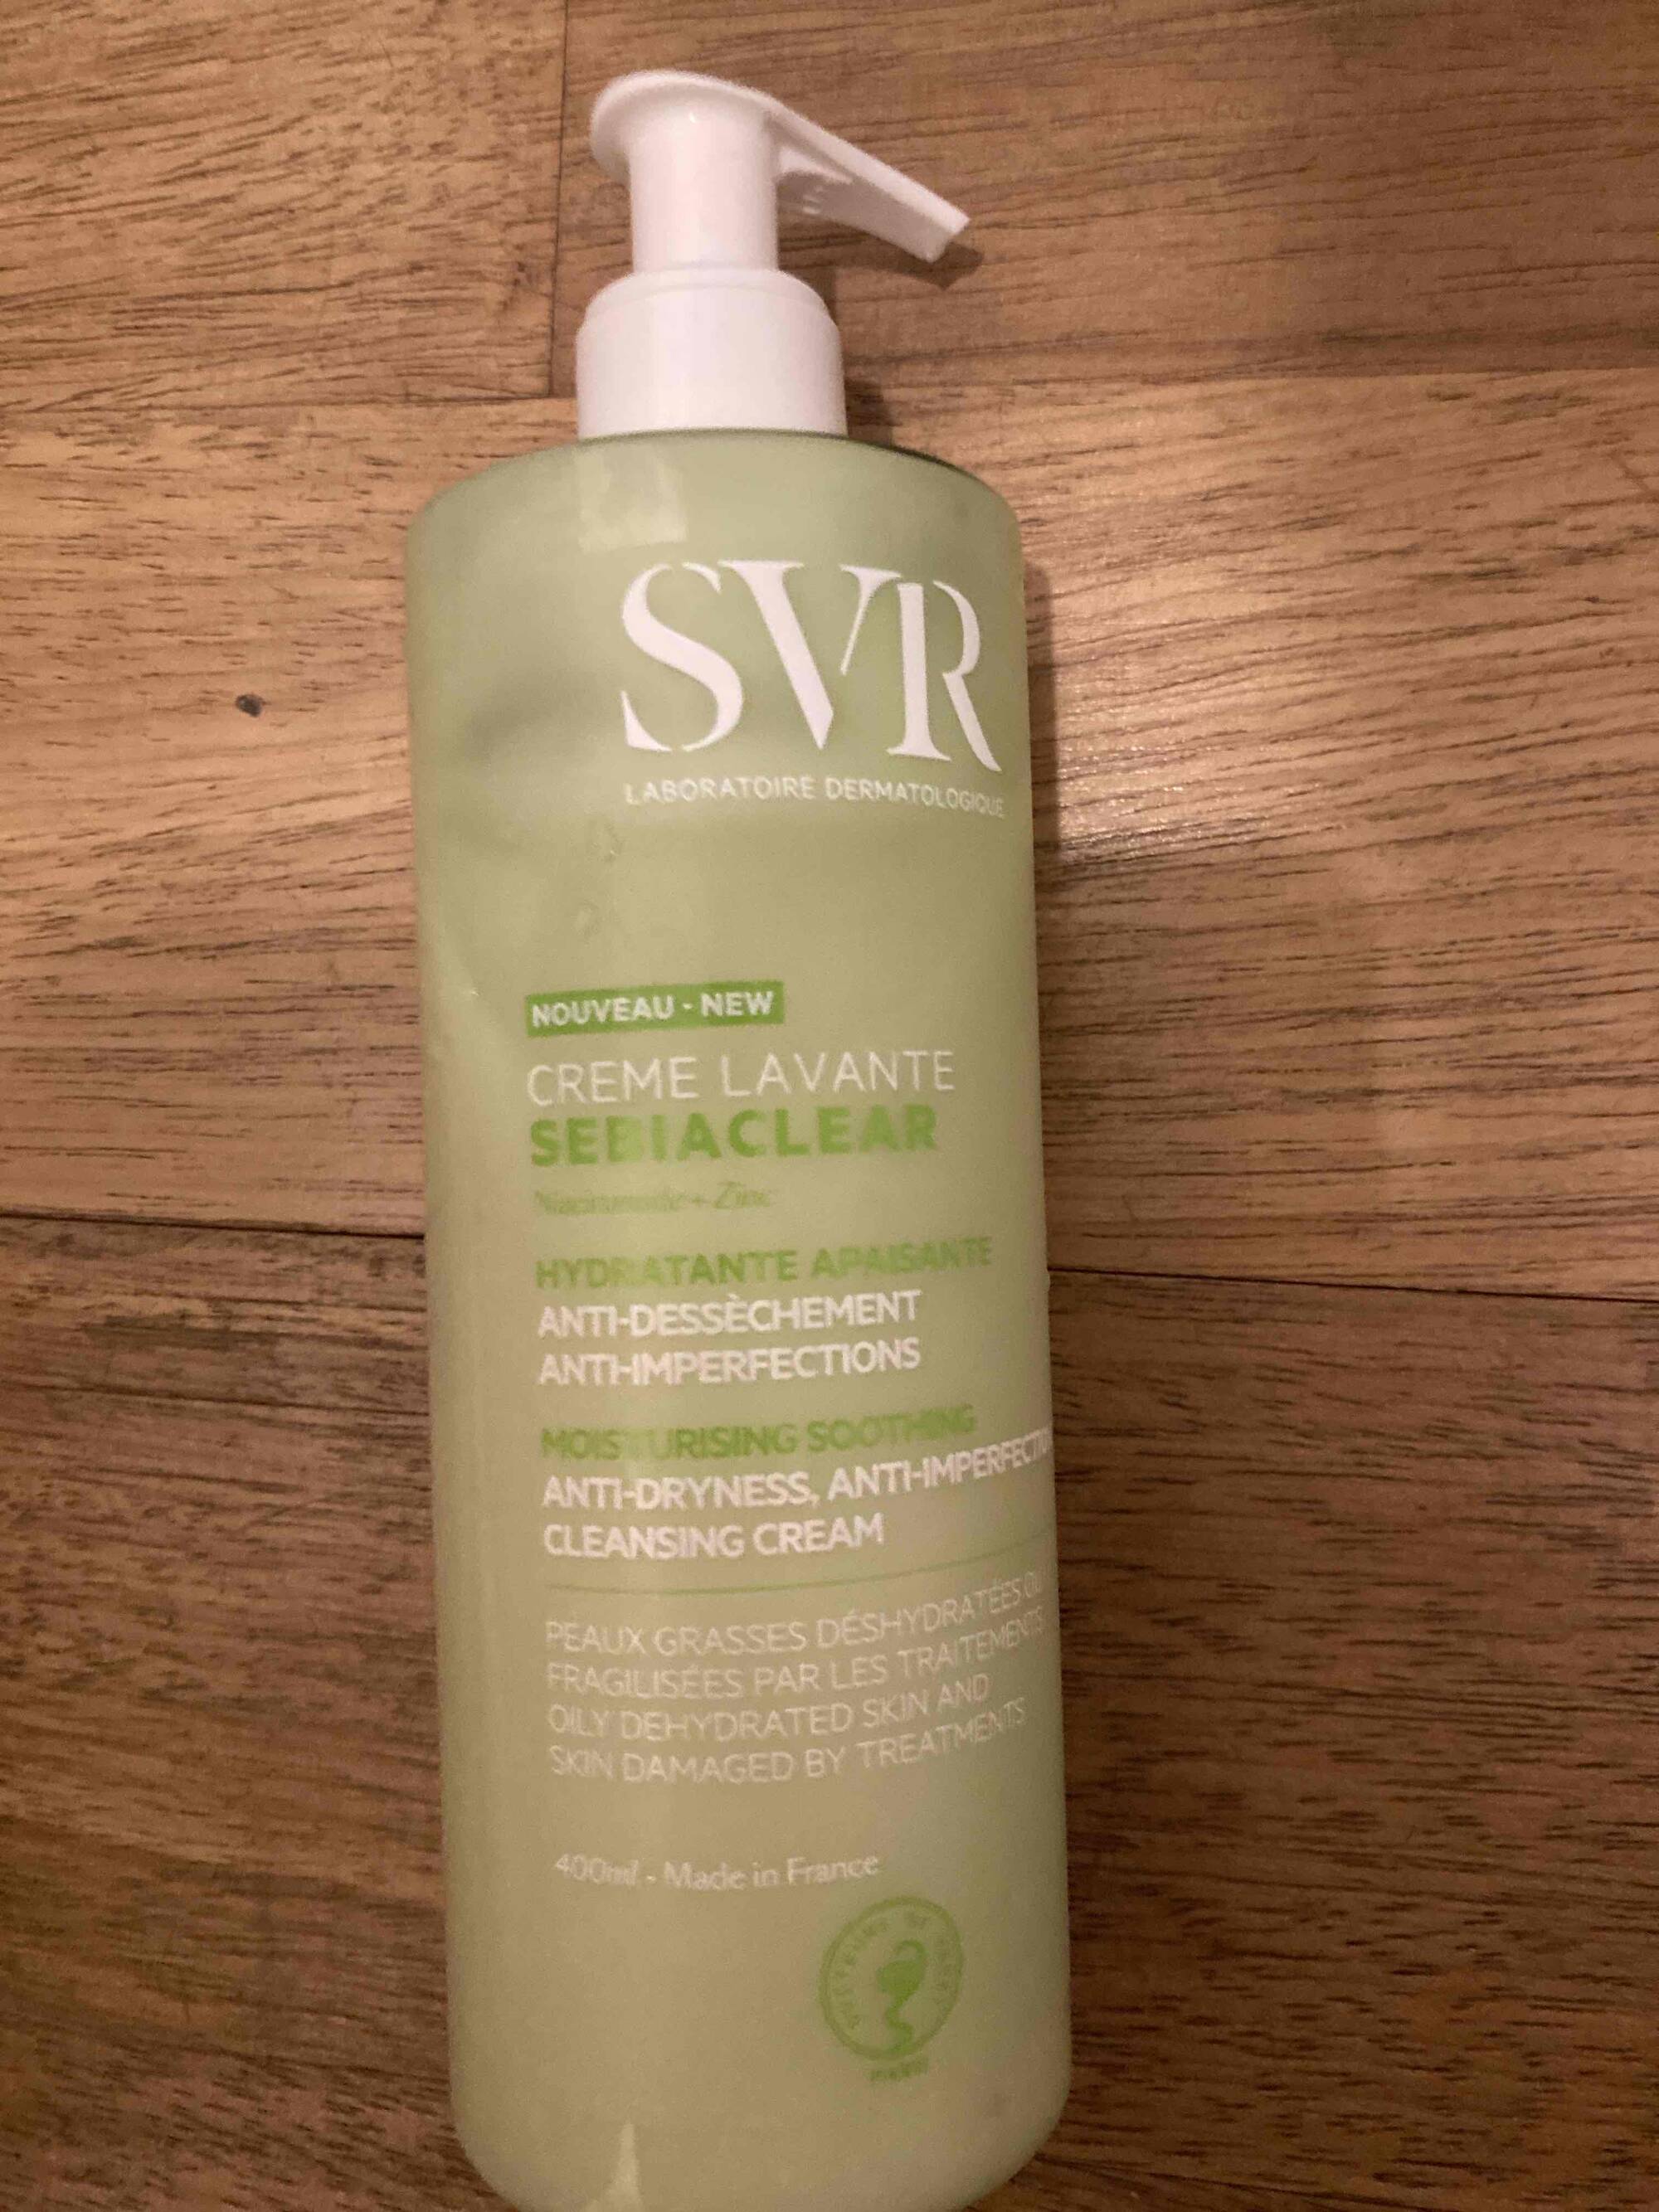 SVR - Crème lavante hydratante apaisante